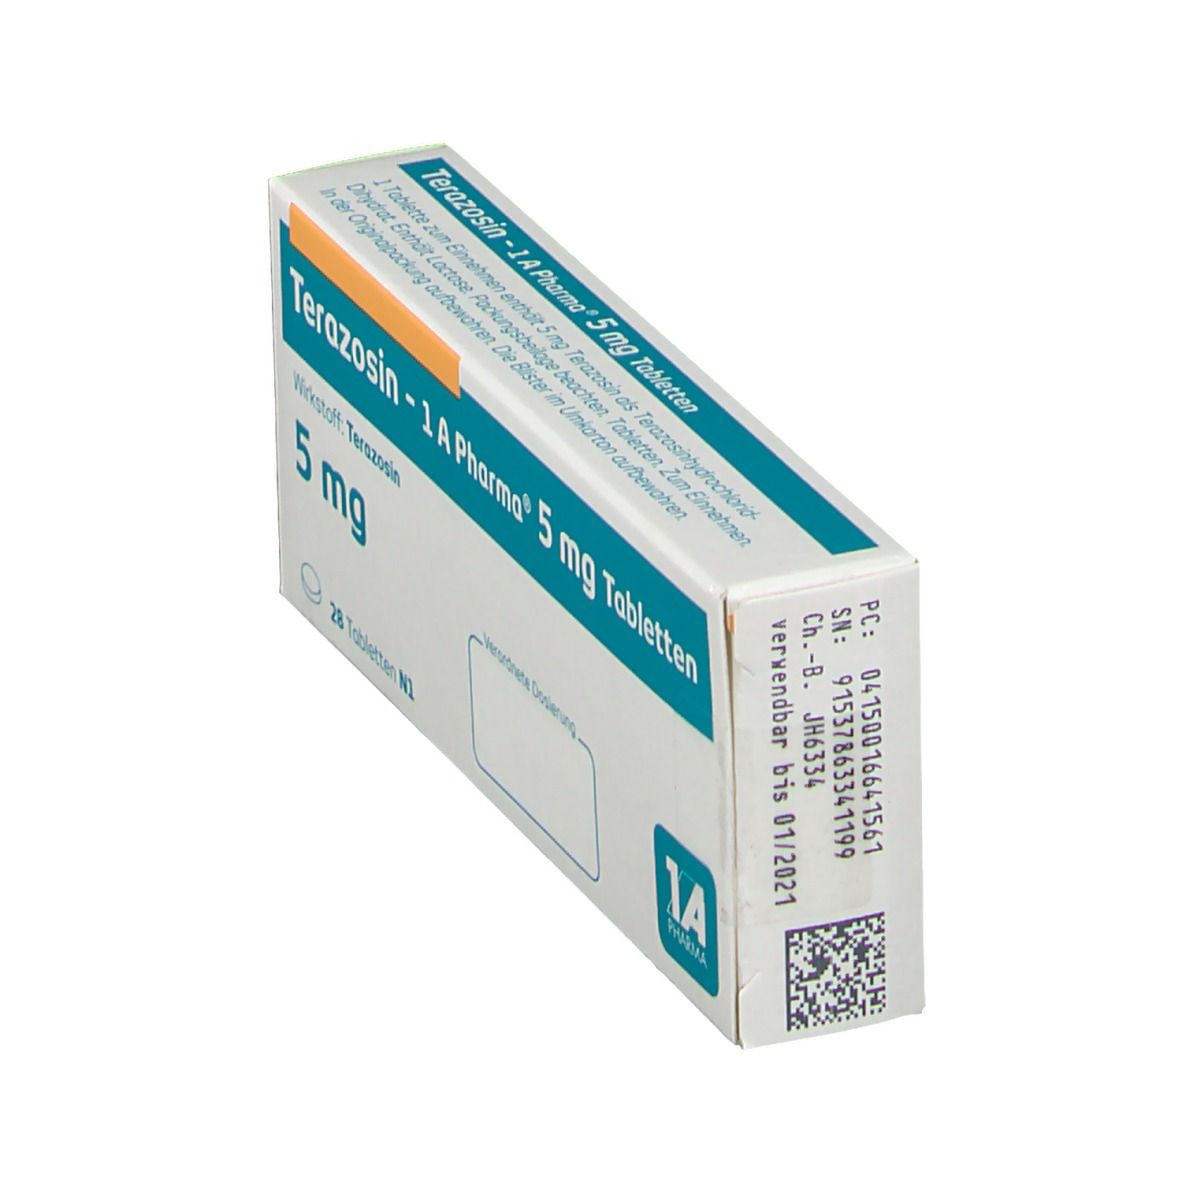 Terazosin - 1 A Pharma® 5 mg